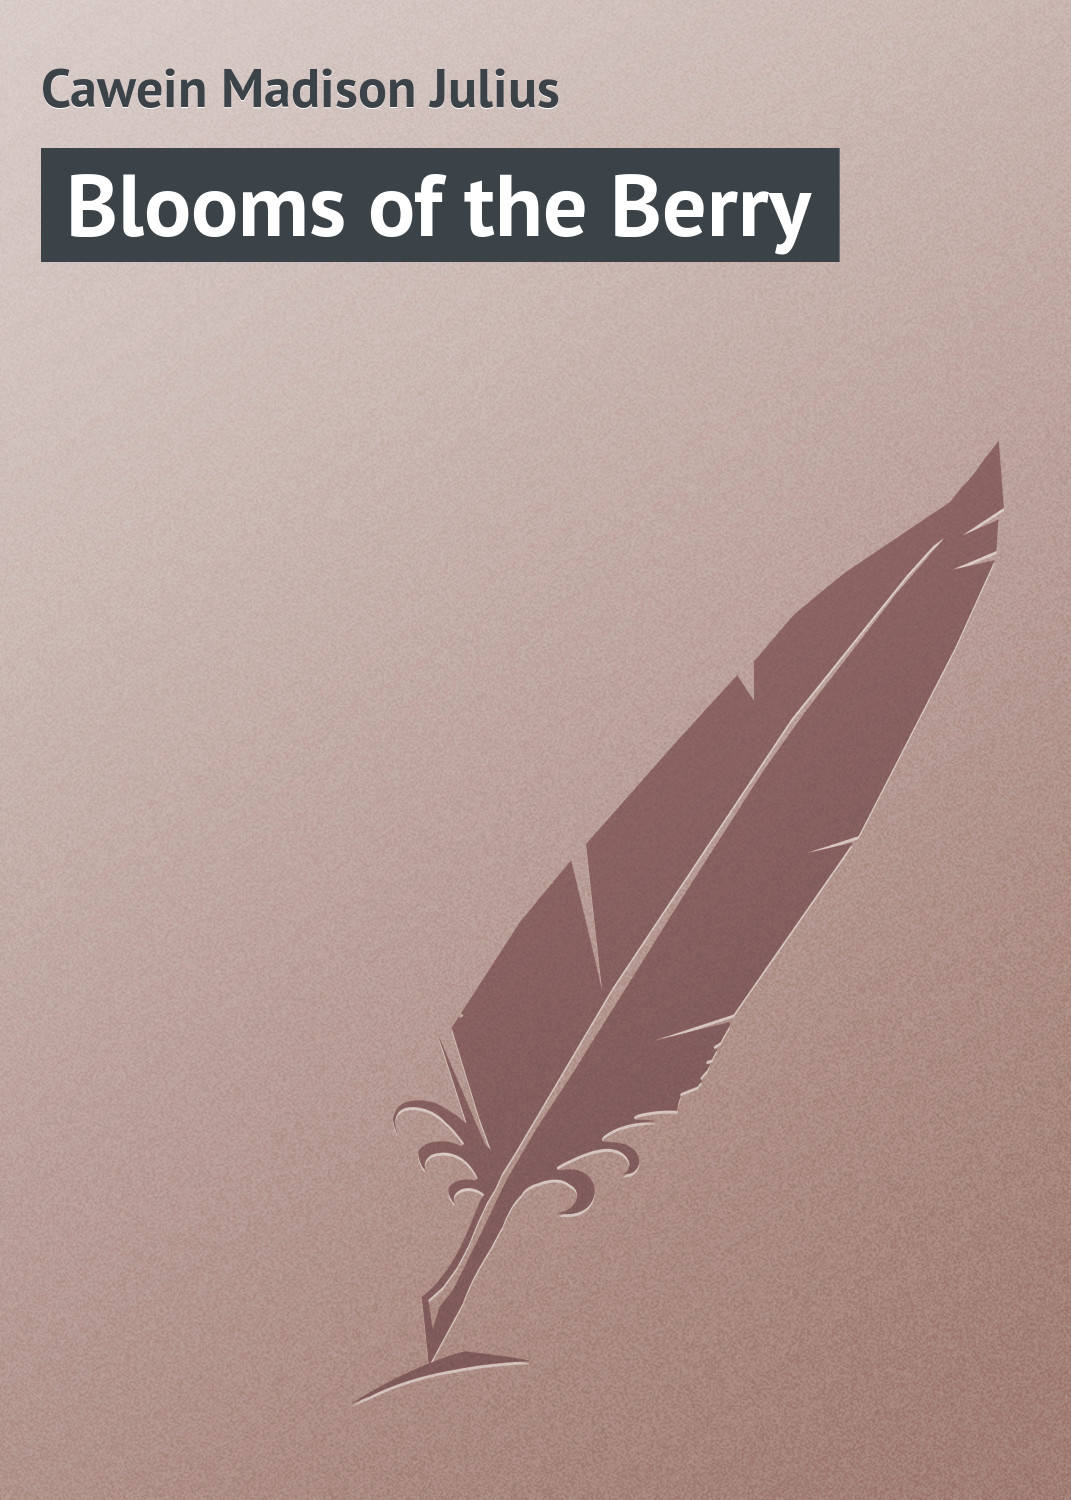 Книга Blooms of the Berry из серии , созданная Madison Cawein, может относится к жанру Поэзия, Зарубежная классика, Зарубежные стихи. Стоимость электронной книги Blooms of the Berry с идентификатором 23164987 составляет 5.99 руб.